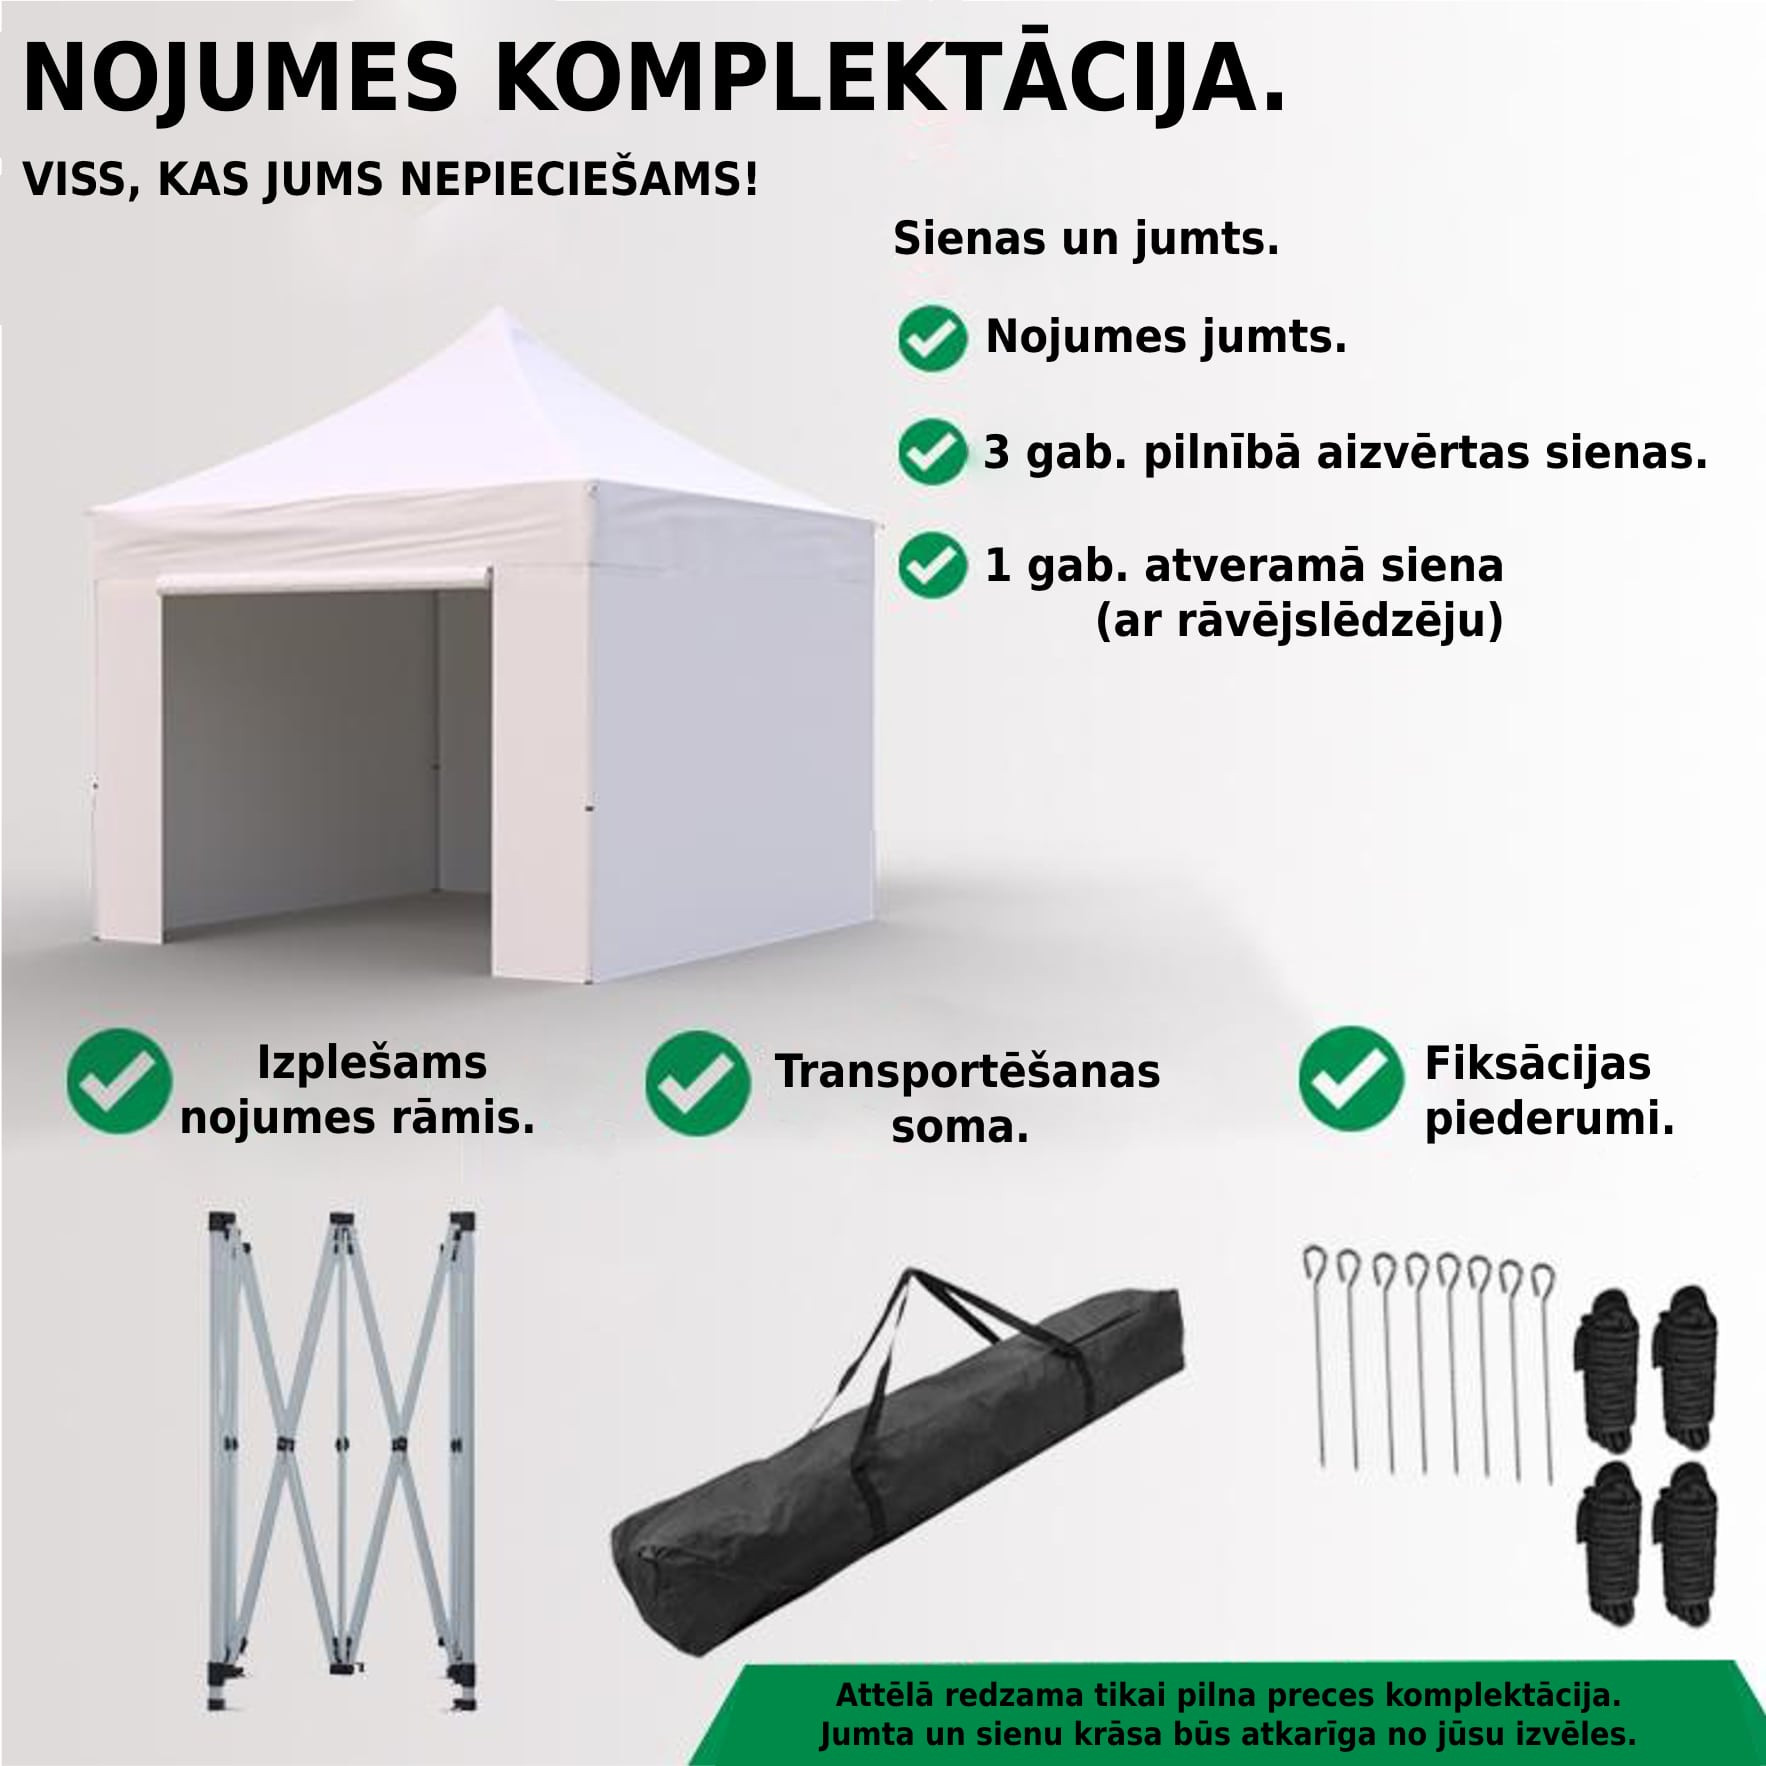 Tirdzniecības telts 2x2 Zila Zeltpro EKOSTRONG